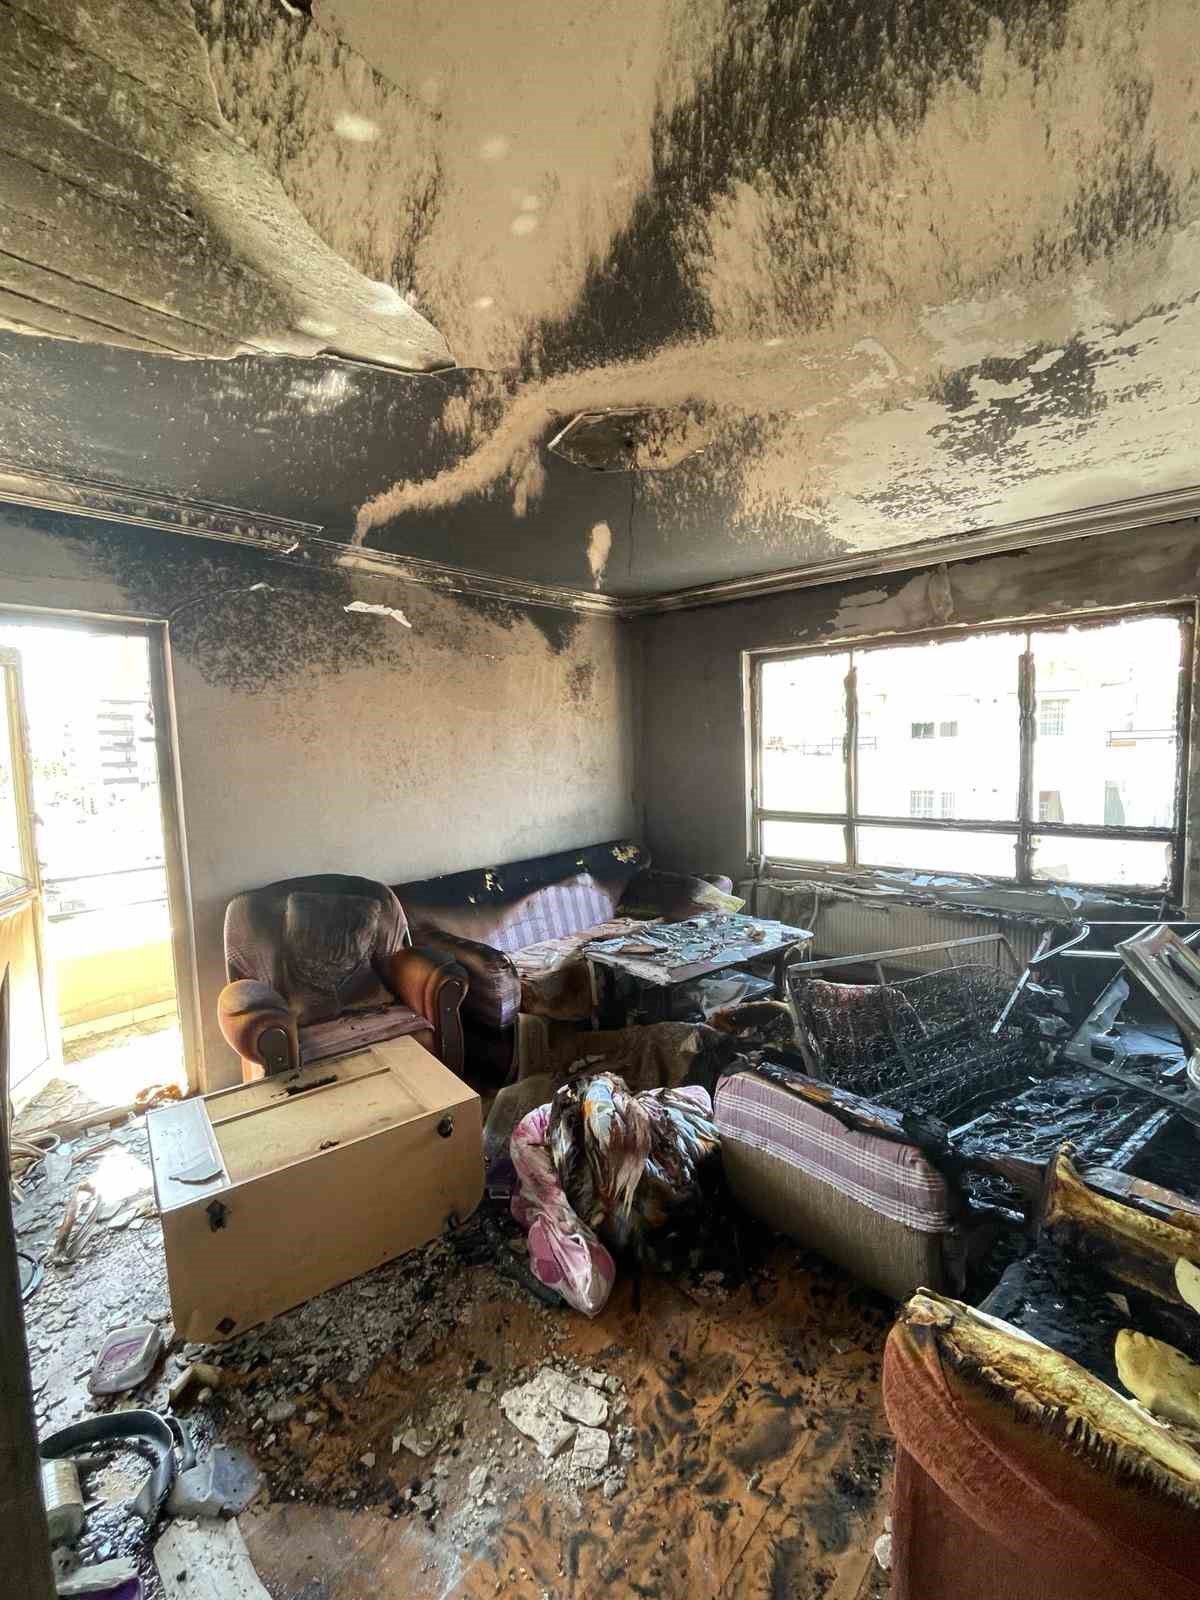 Hakkında tahliye kararı verilen kiracı oturduğu evi yaktı
